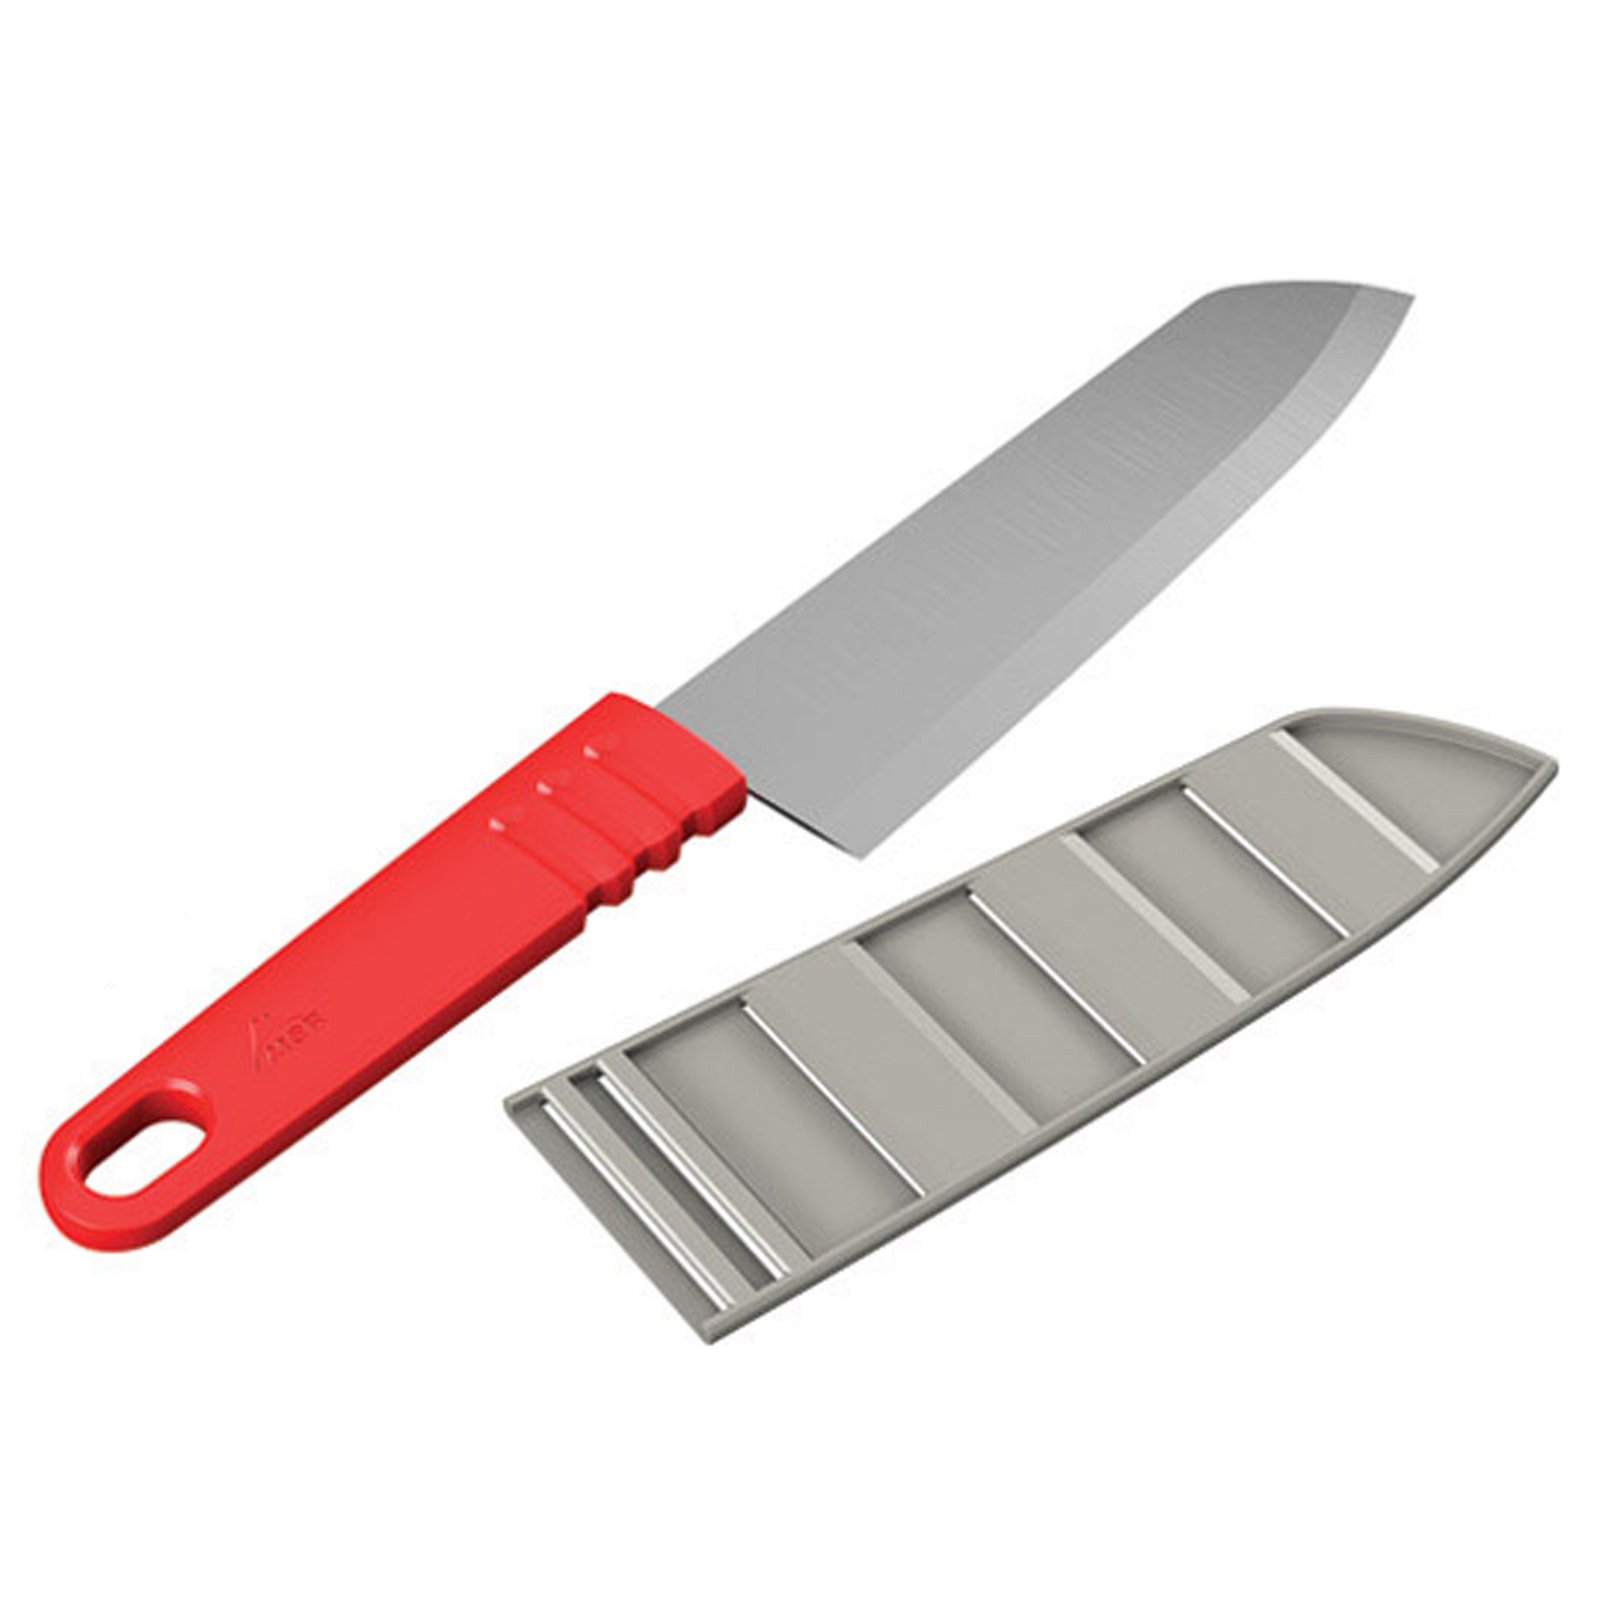 MSR Alpine Chef's Knife